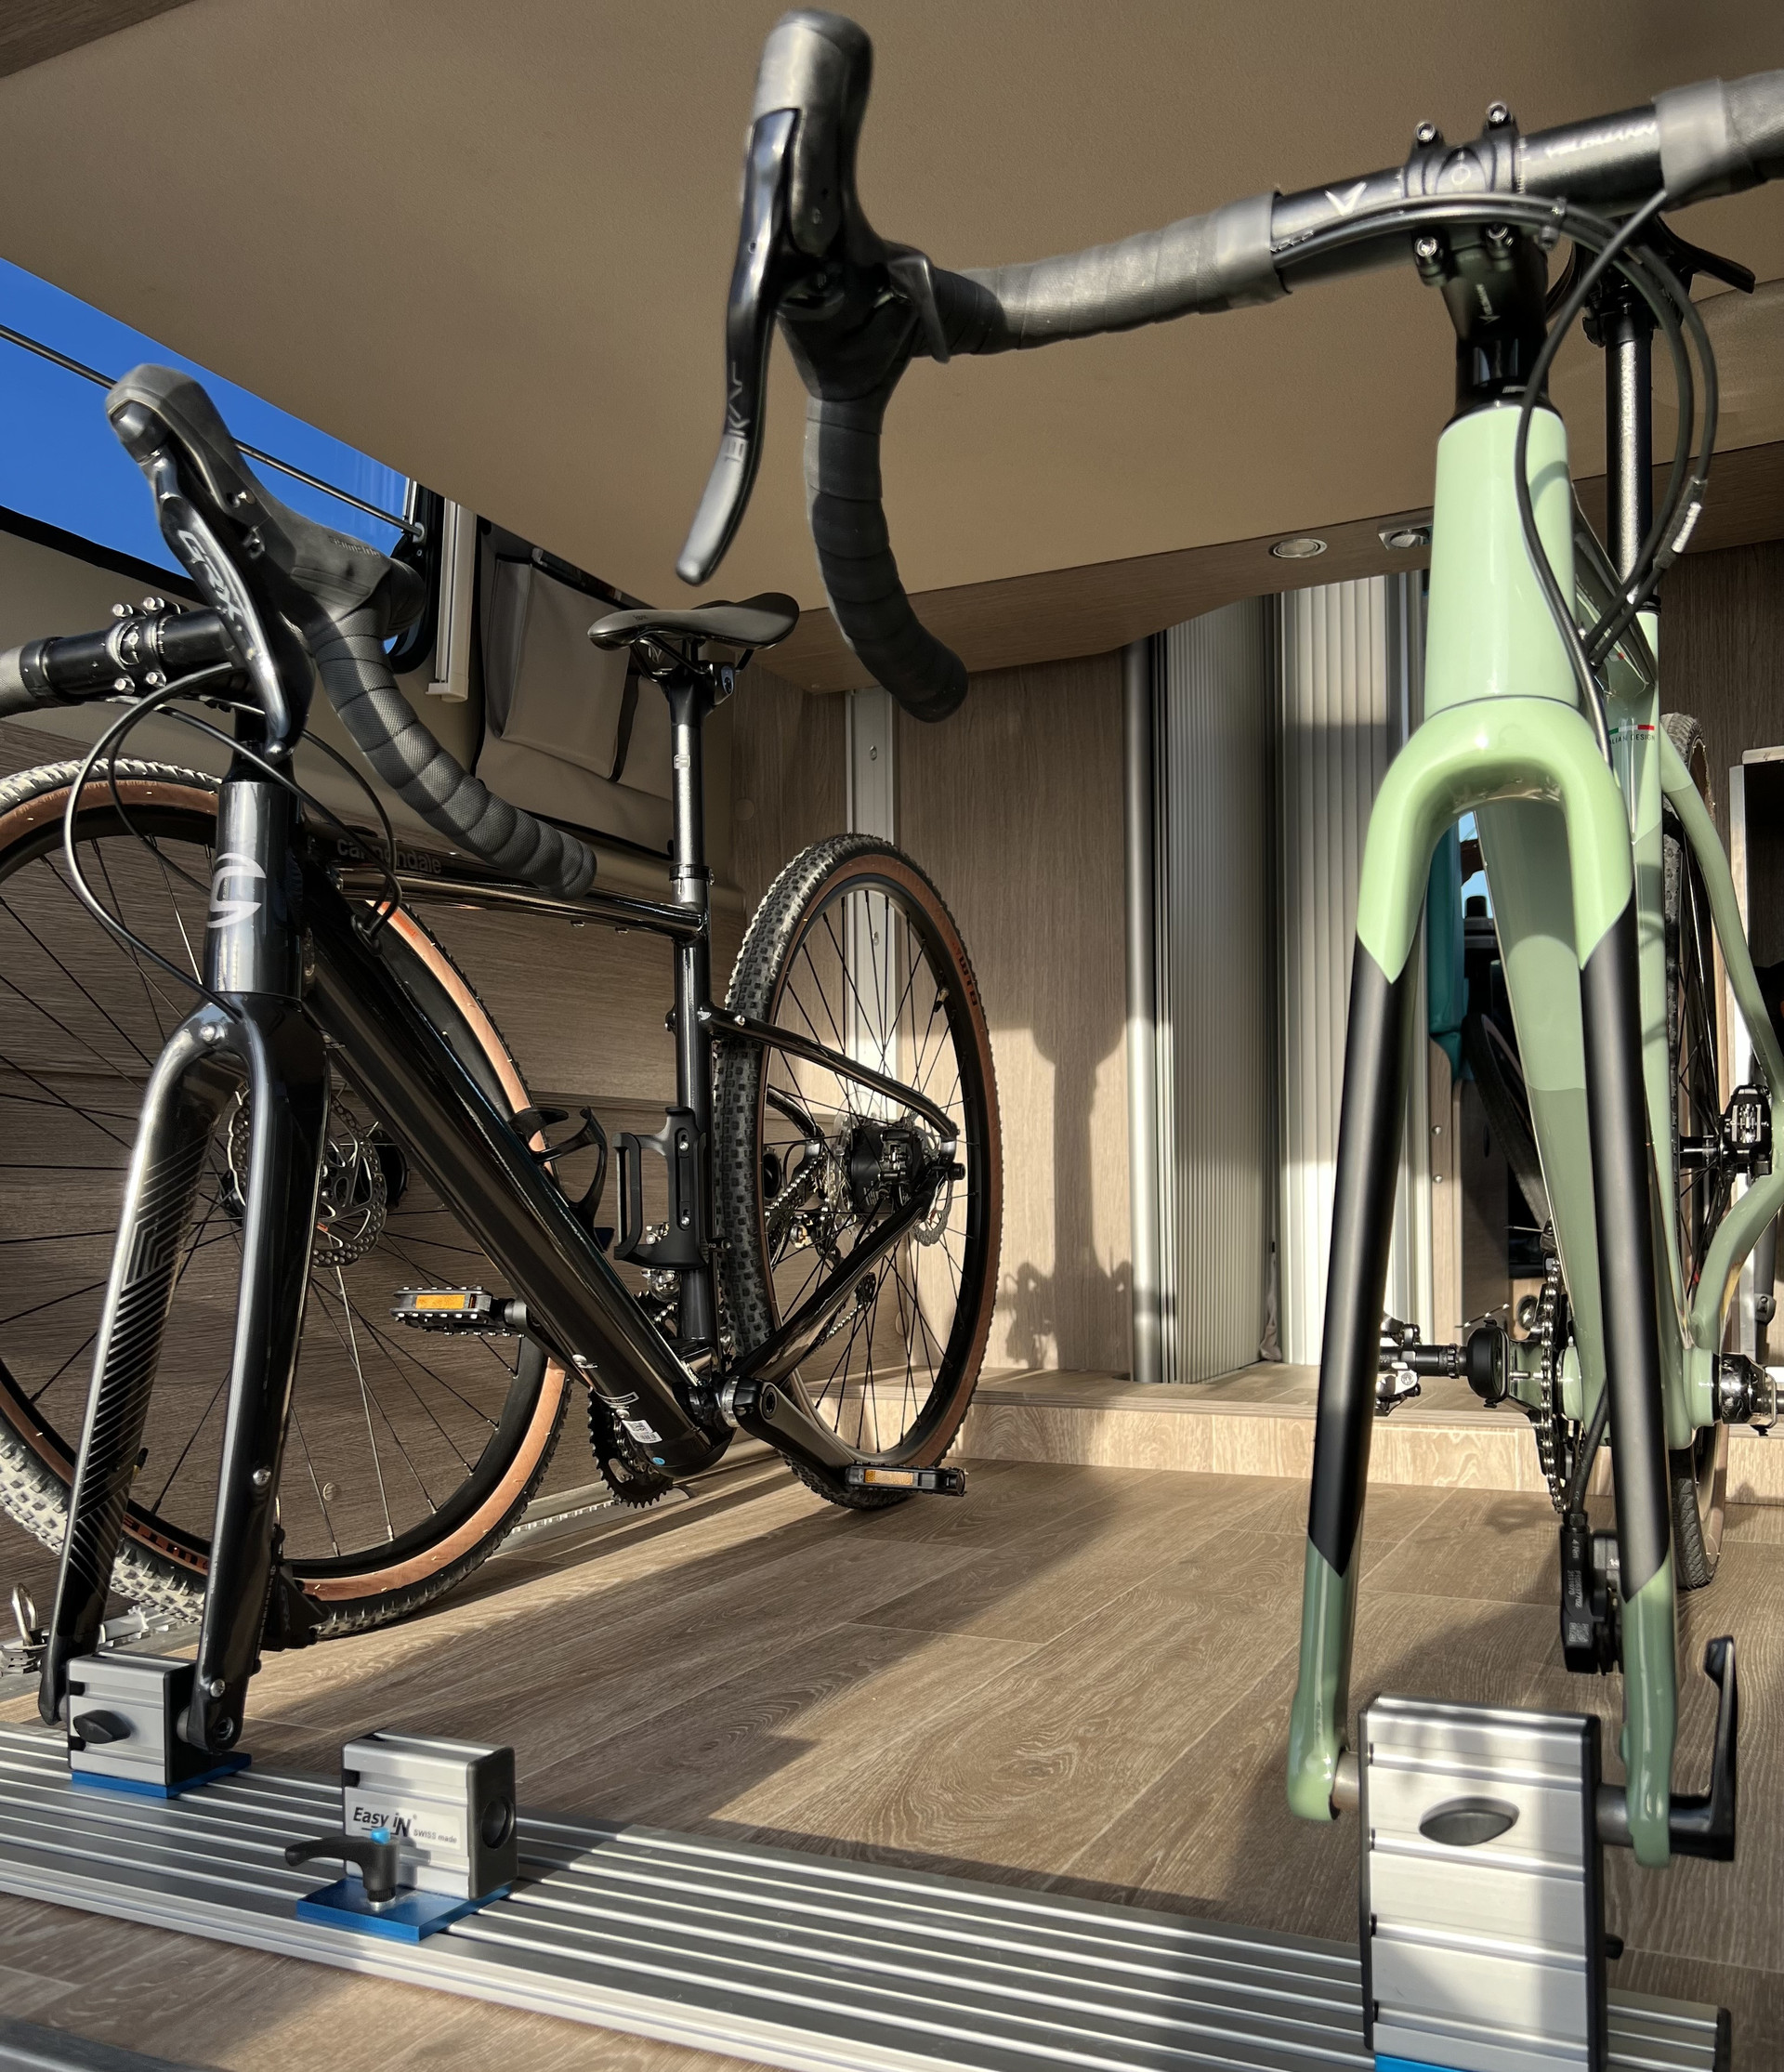 Fahrräder sind sicher im Inneren des Wohnmobils untergebracht